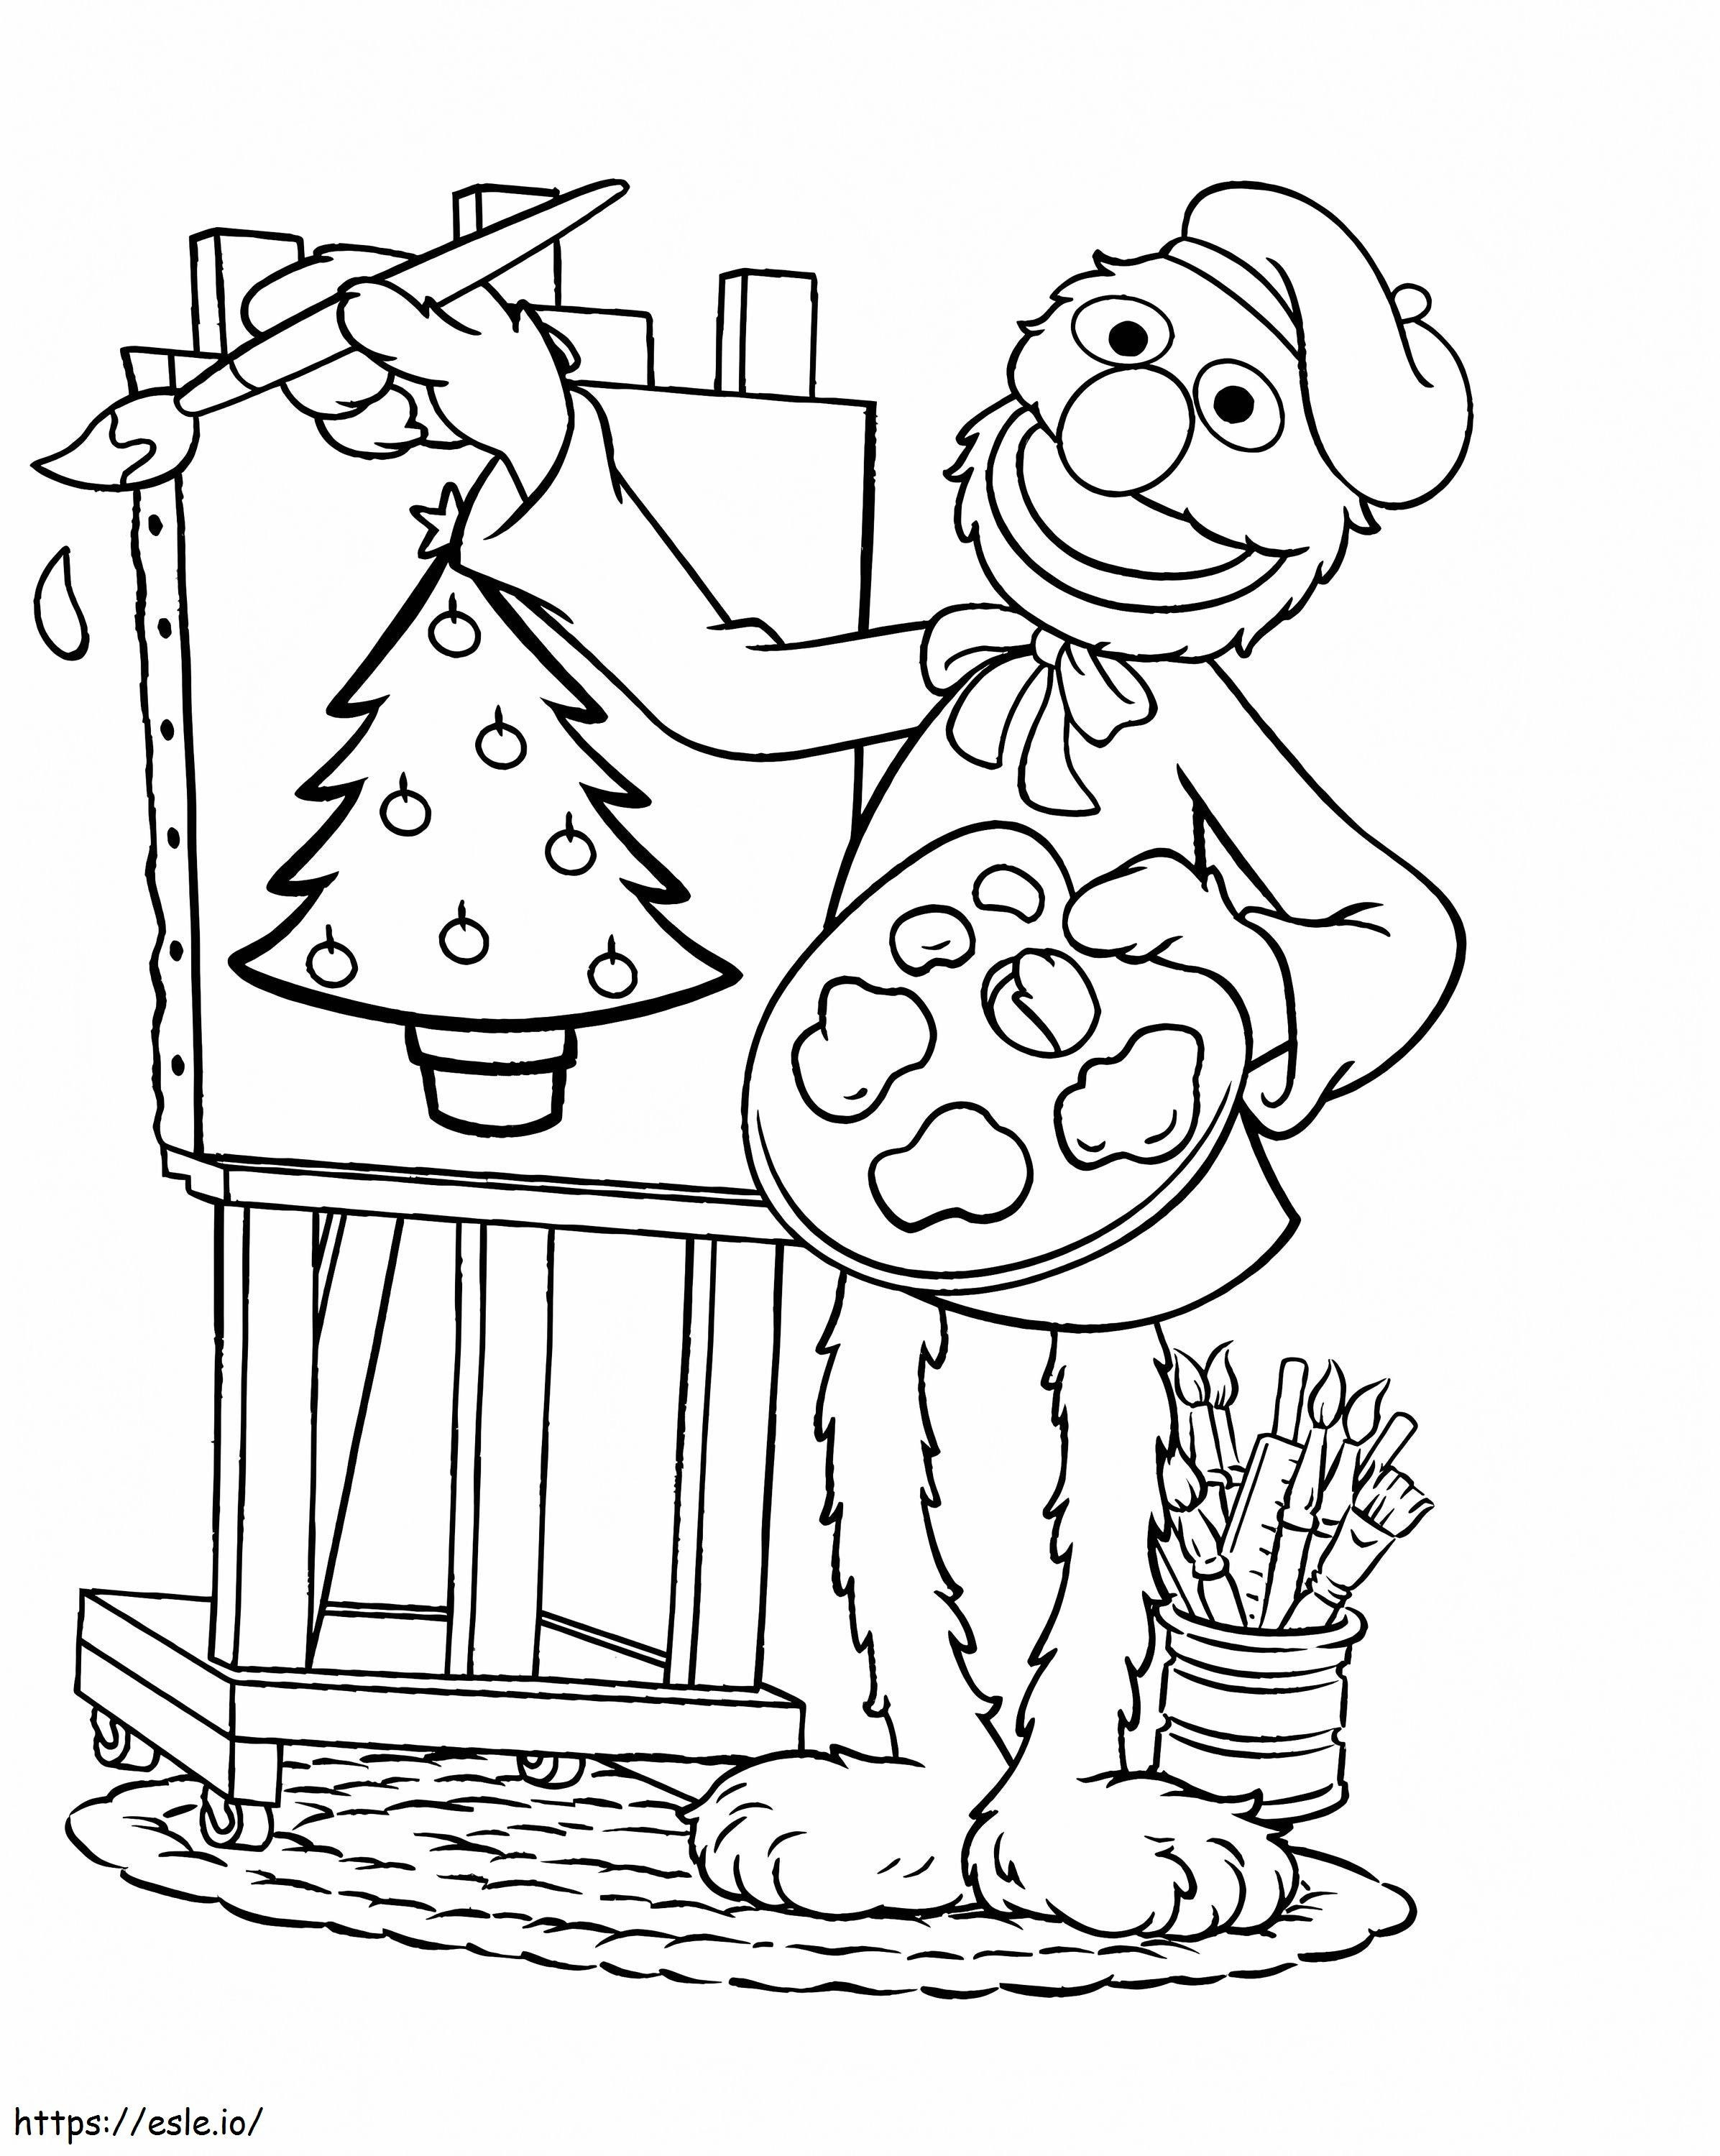 Grover festmény karácsonyfát kifestő